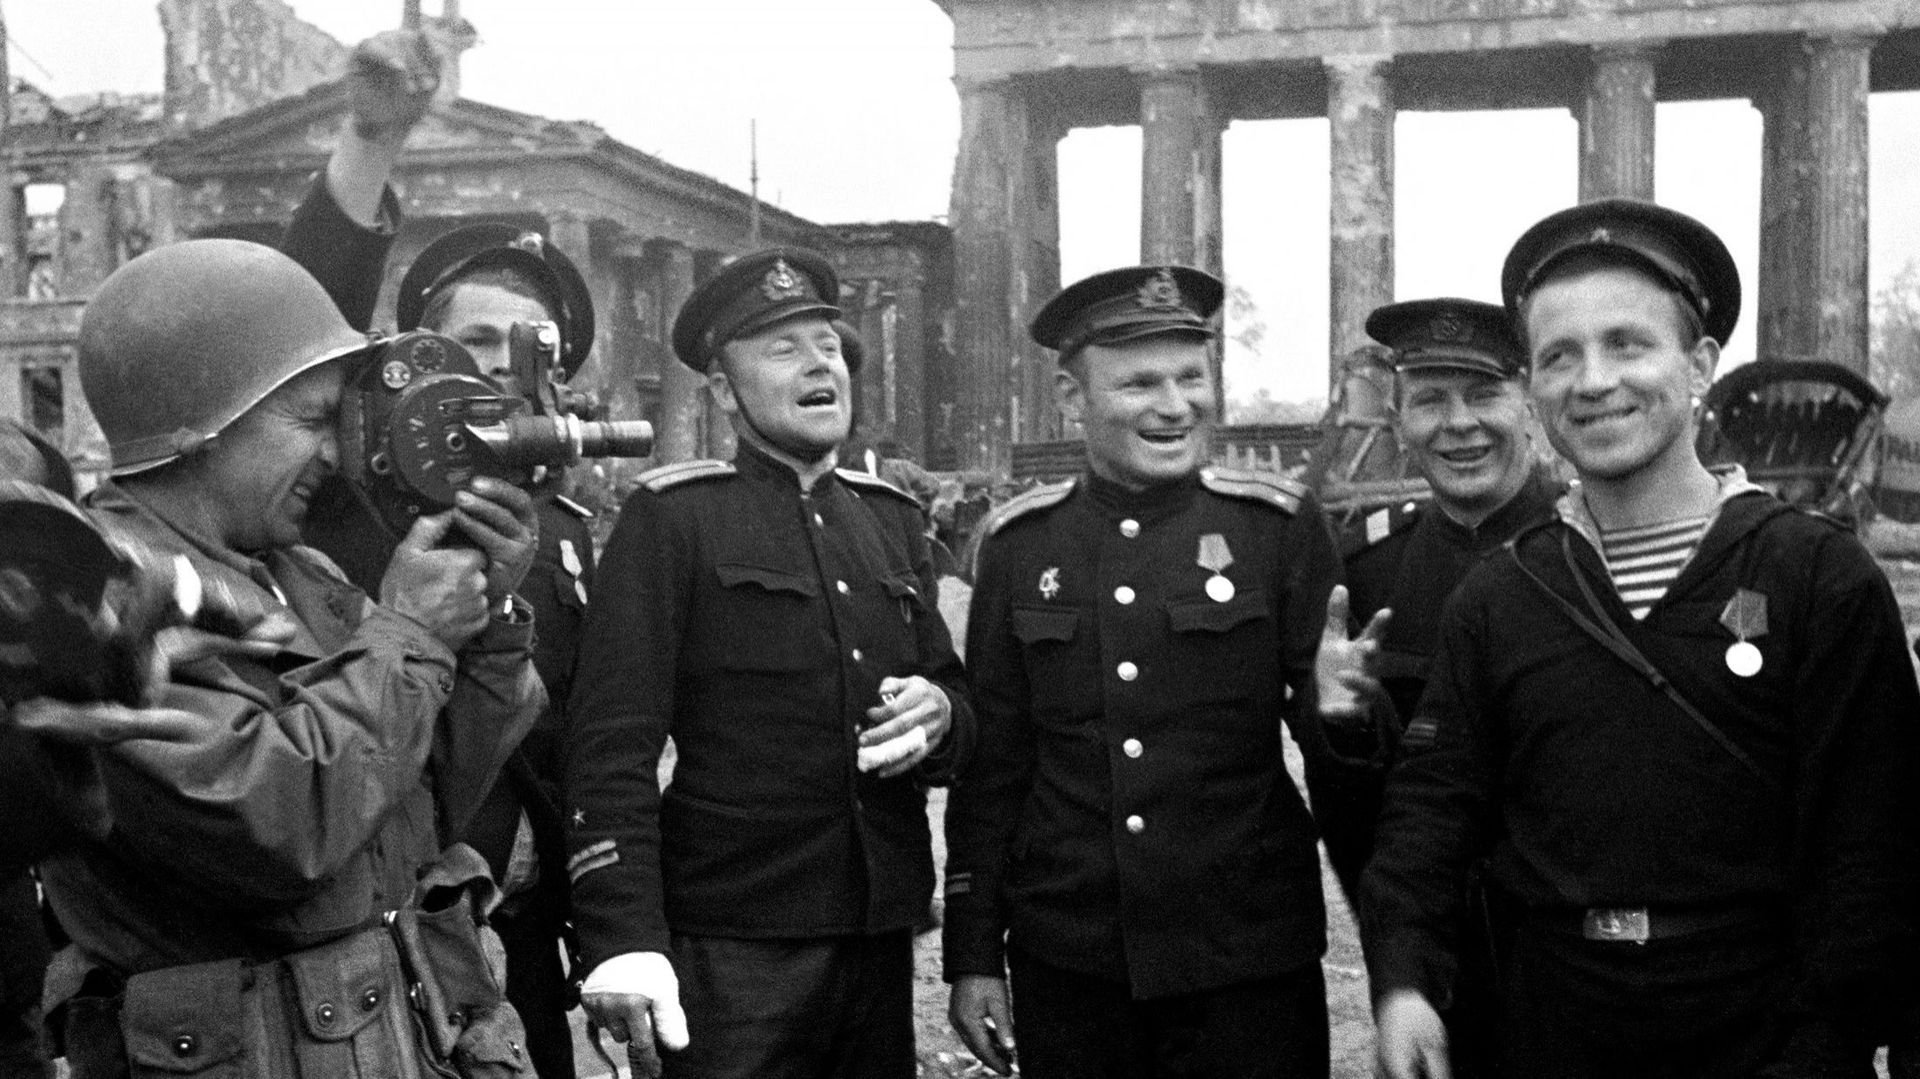 Des soldats soviétiques posent devant la porte de Brandebourg à Berlin, sous l’œil d’un caméraman américain, en mai 1945, au moment de la fin de la guerre.